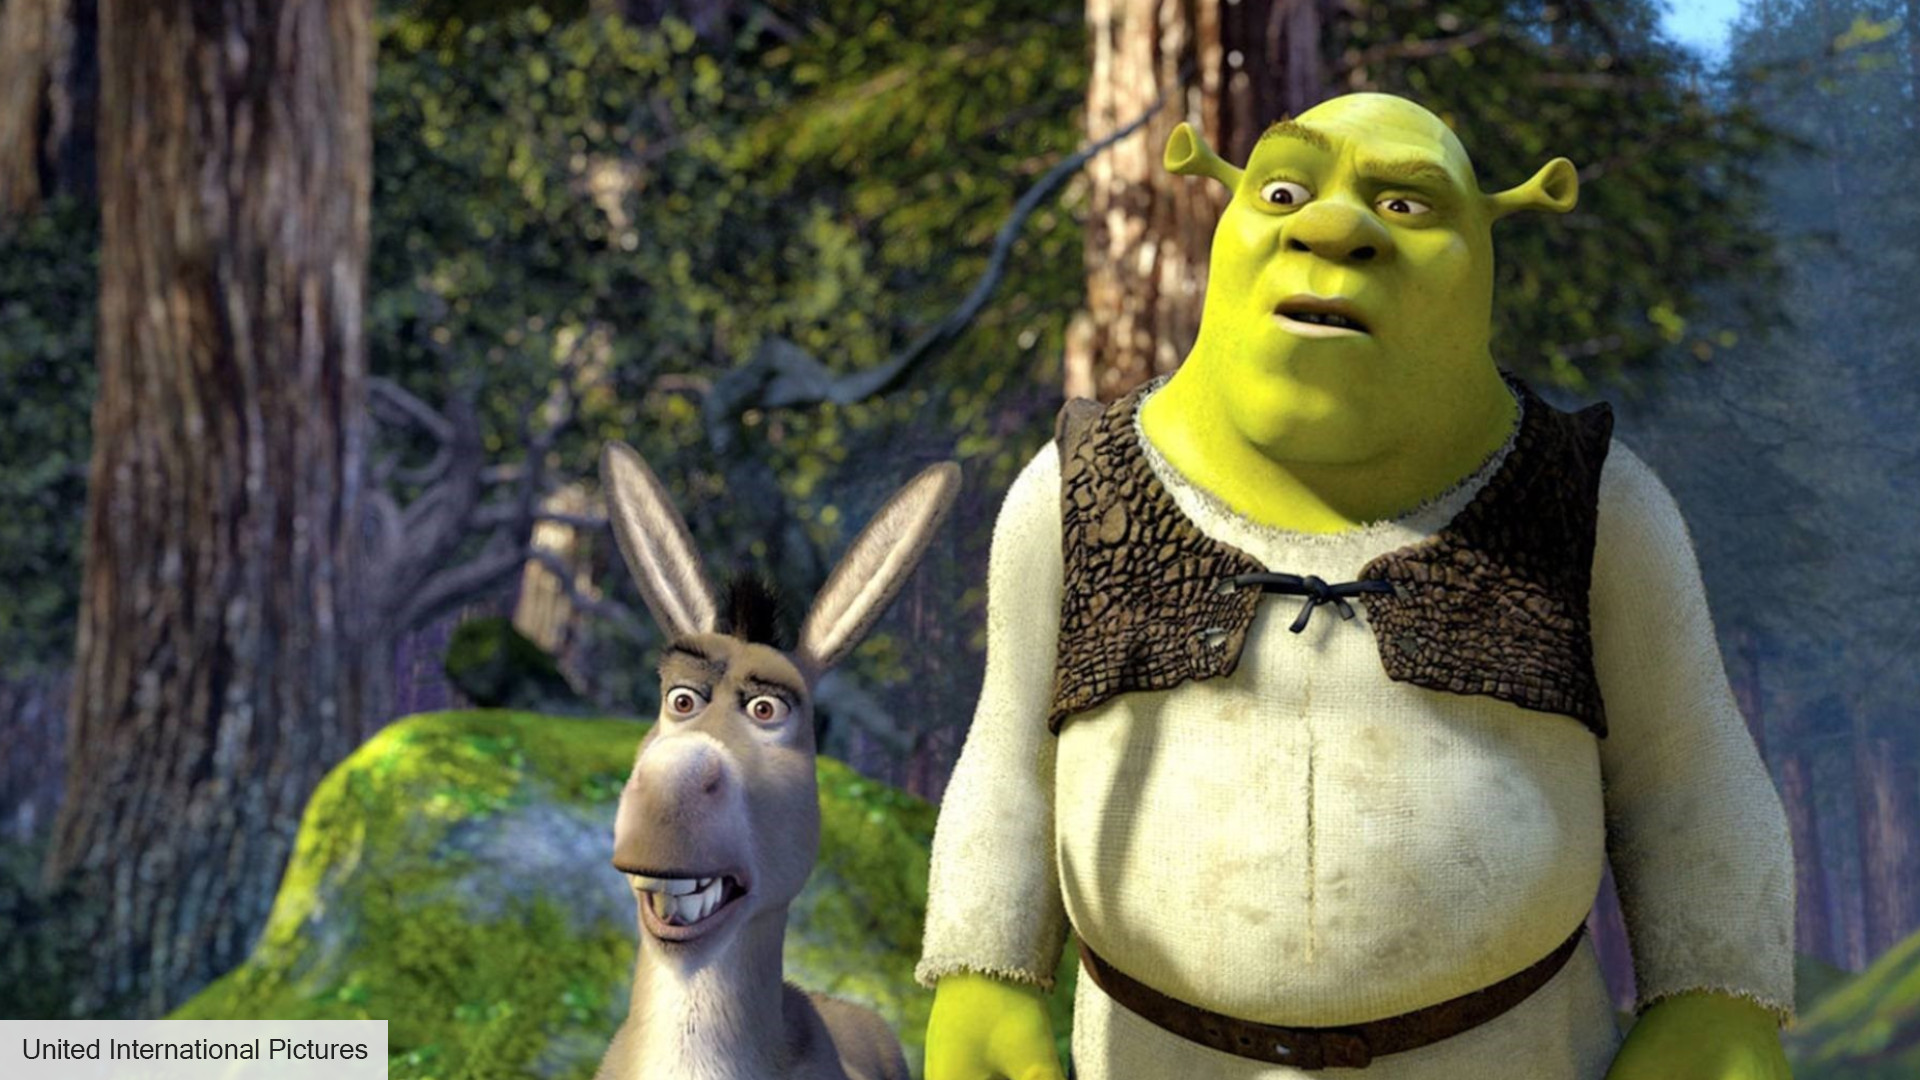 Shrek 5 release date: Shrek and Donkey looking confused